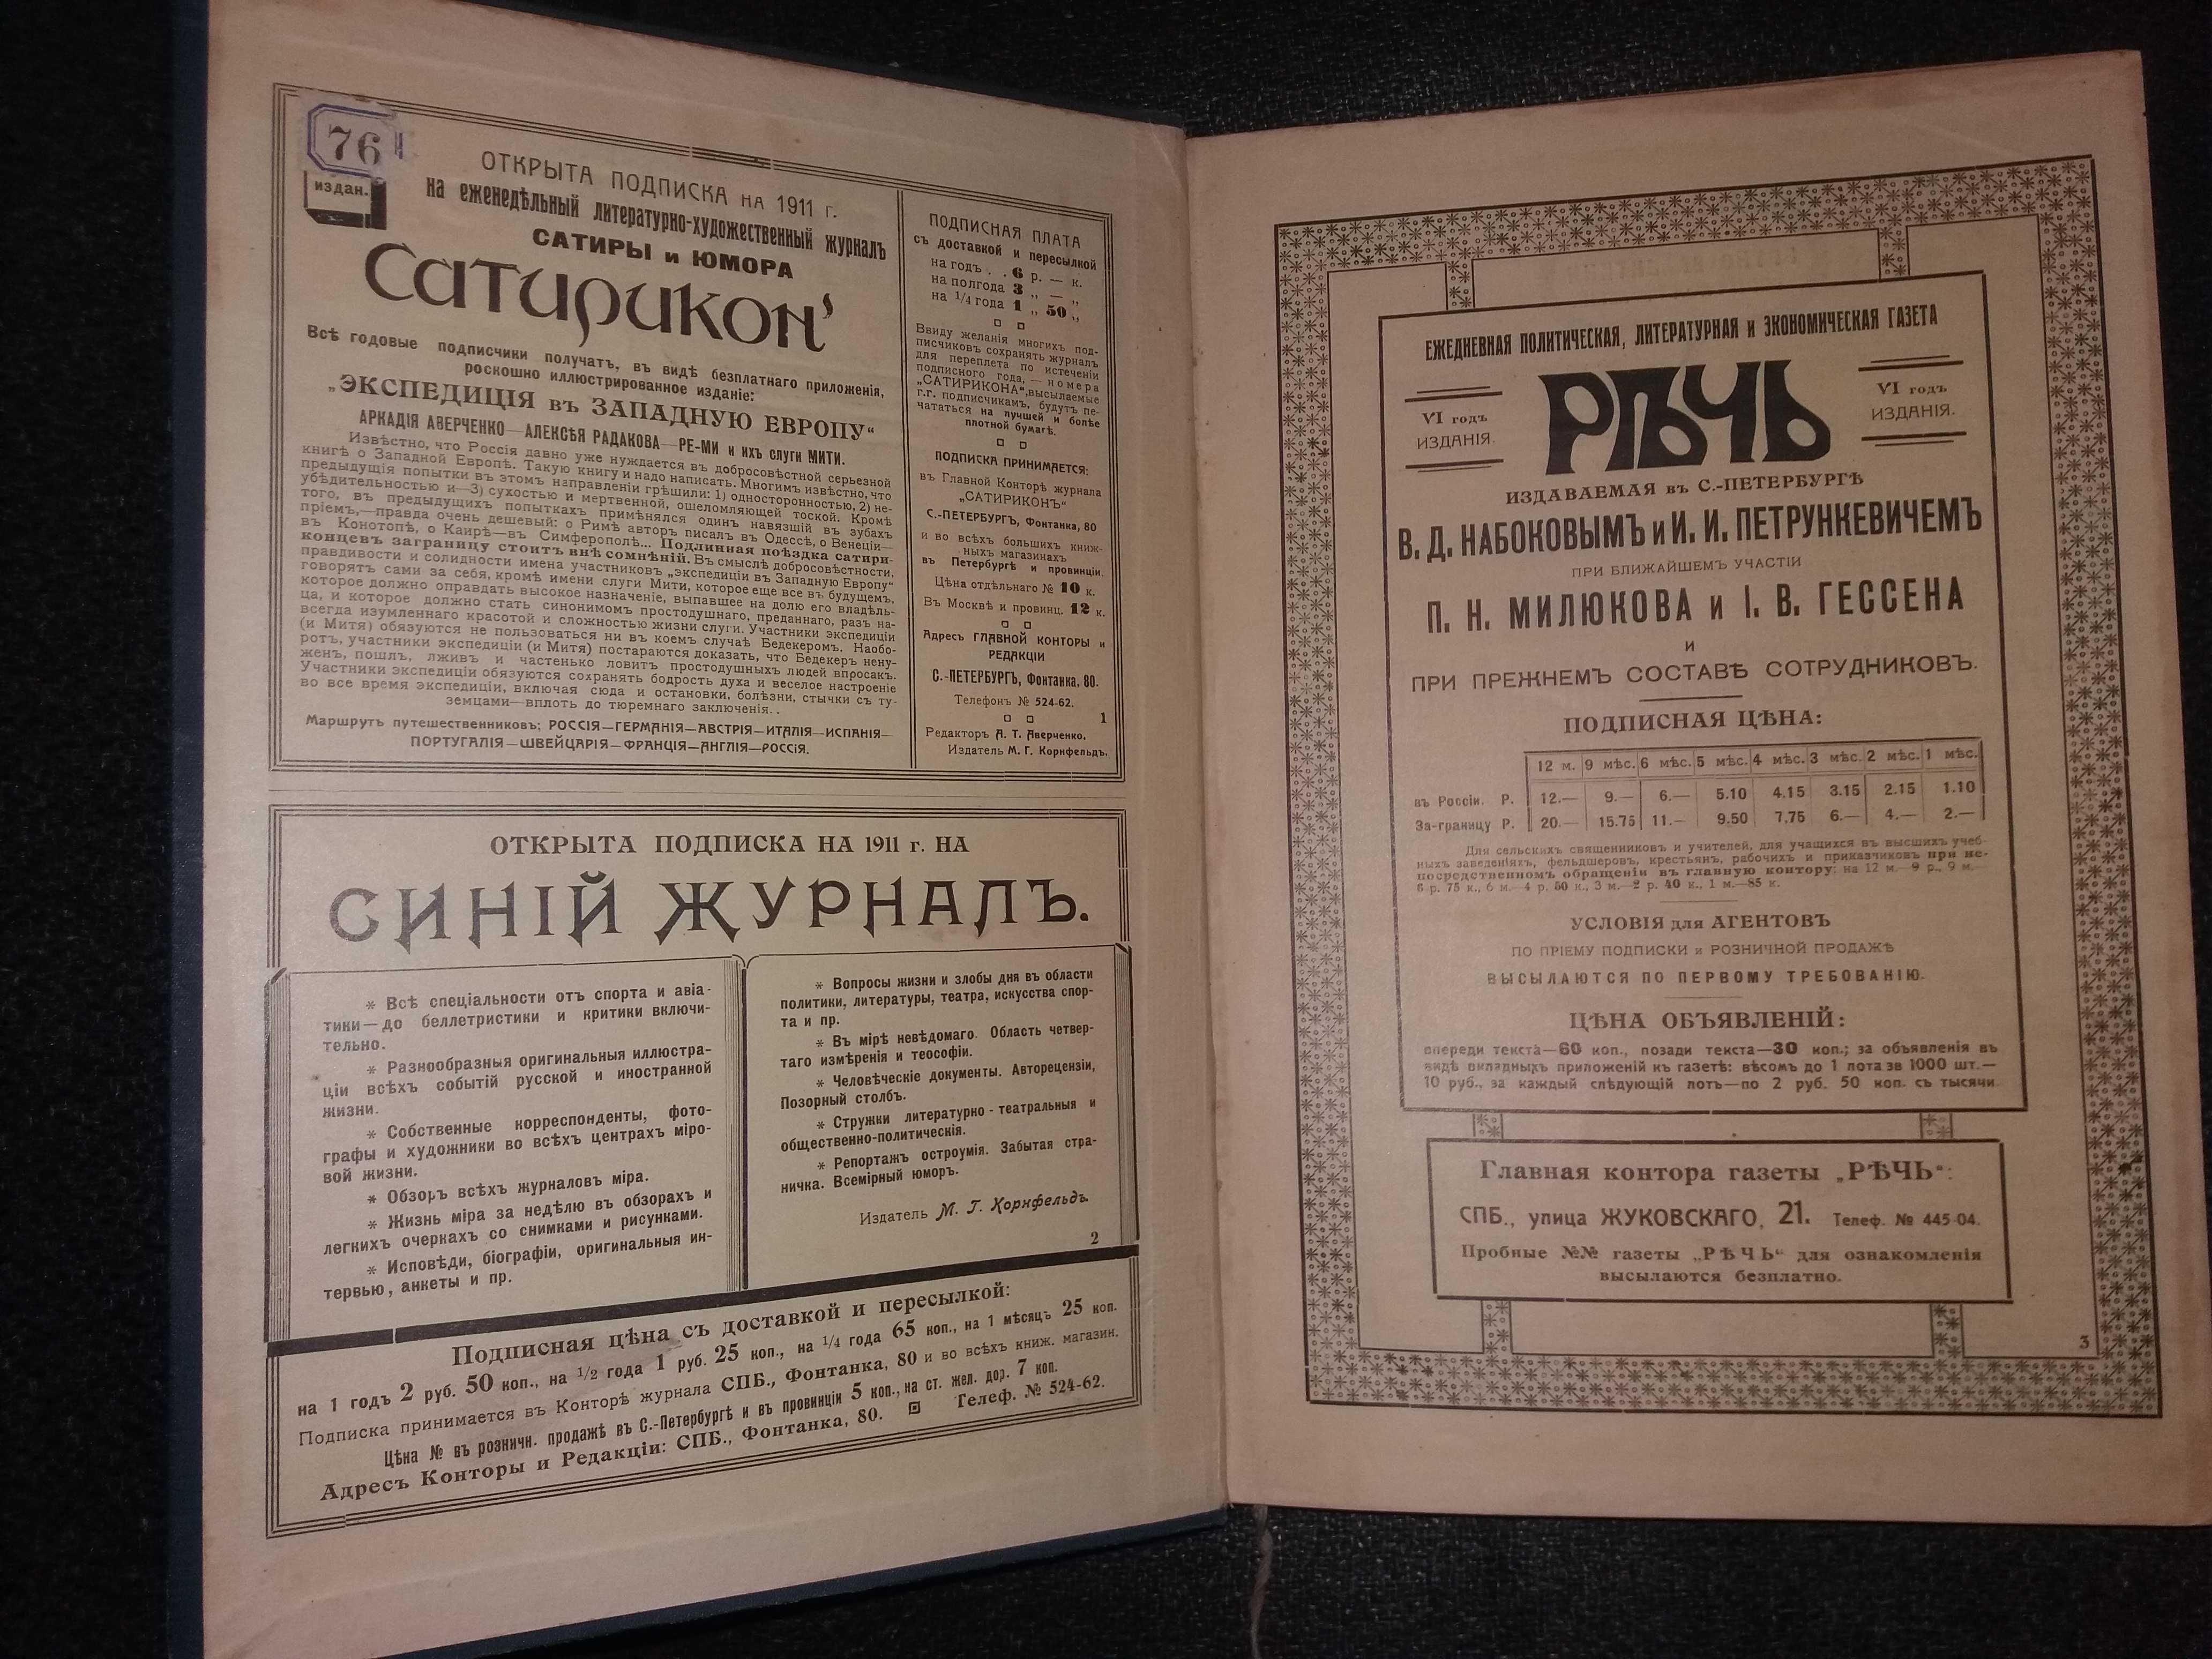 Газетный мир: Адресная и справочная книга на 1911 год